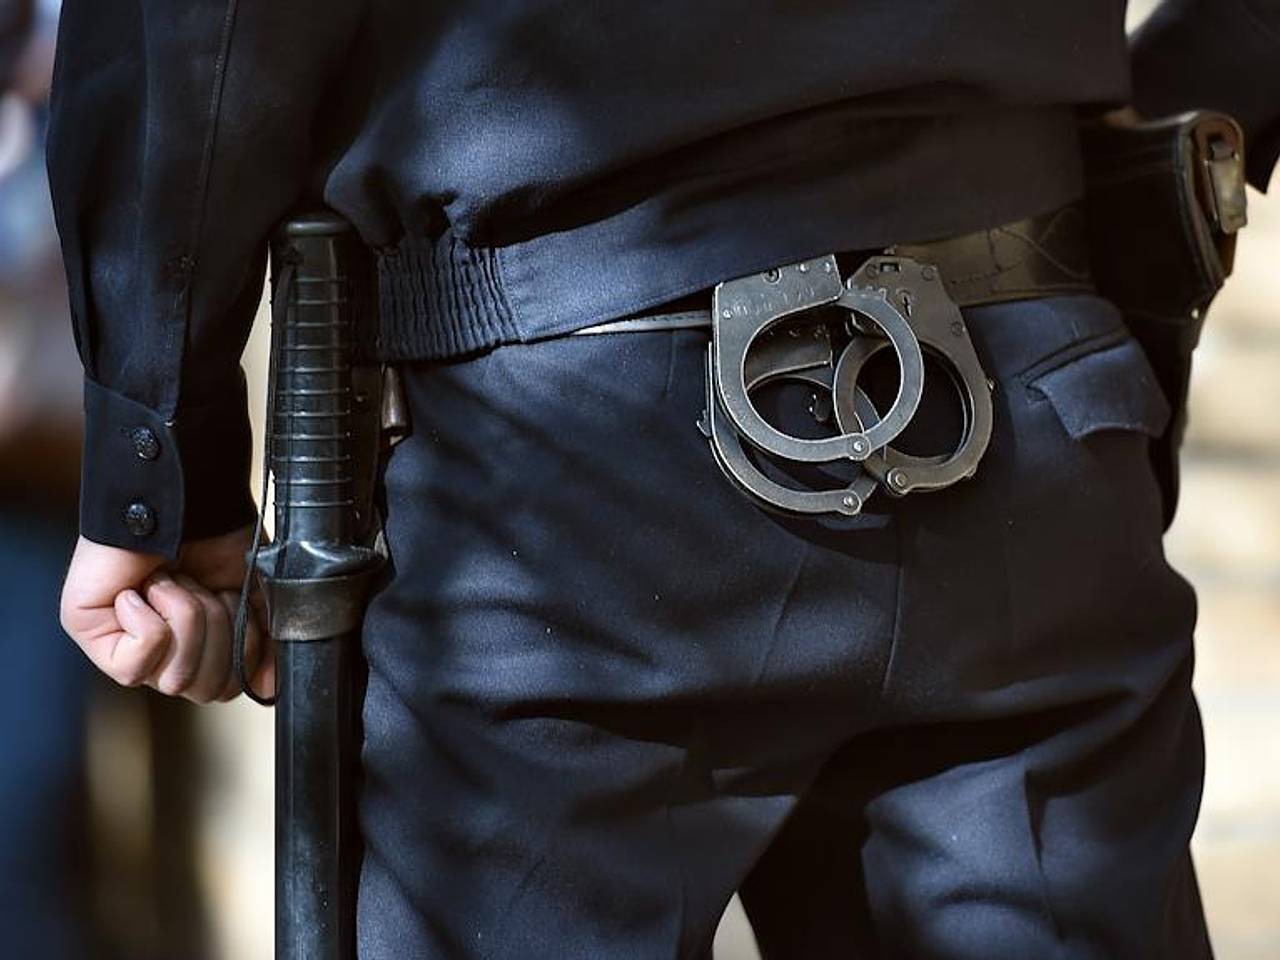 Ношение дубинки. Наручники и дубинка. Спецсредства полиции. Полицейская дубинка и наручники. Спецсредства в полиции наручники.